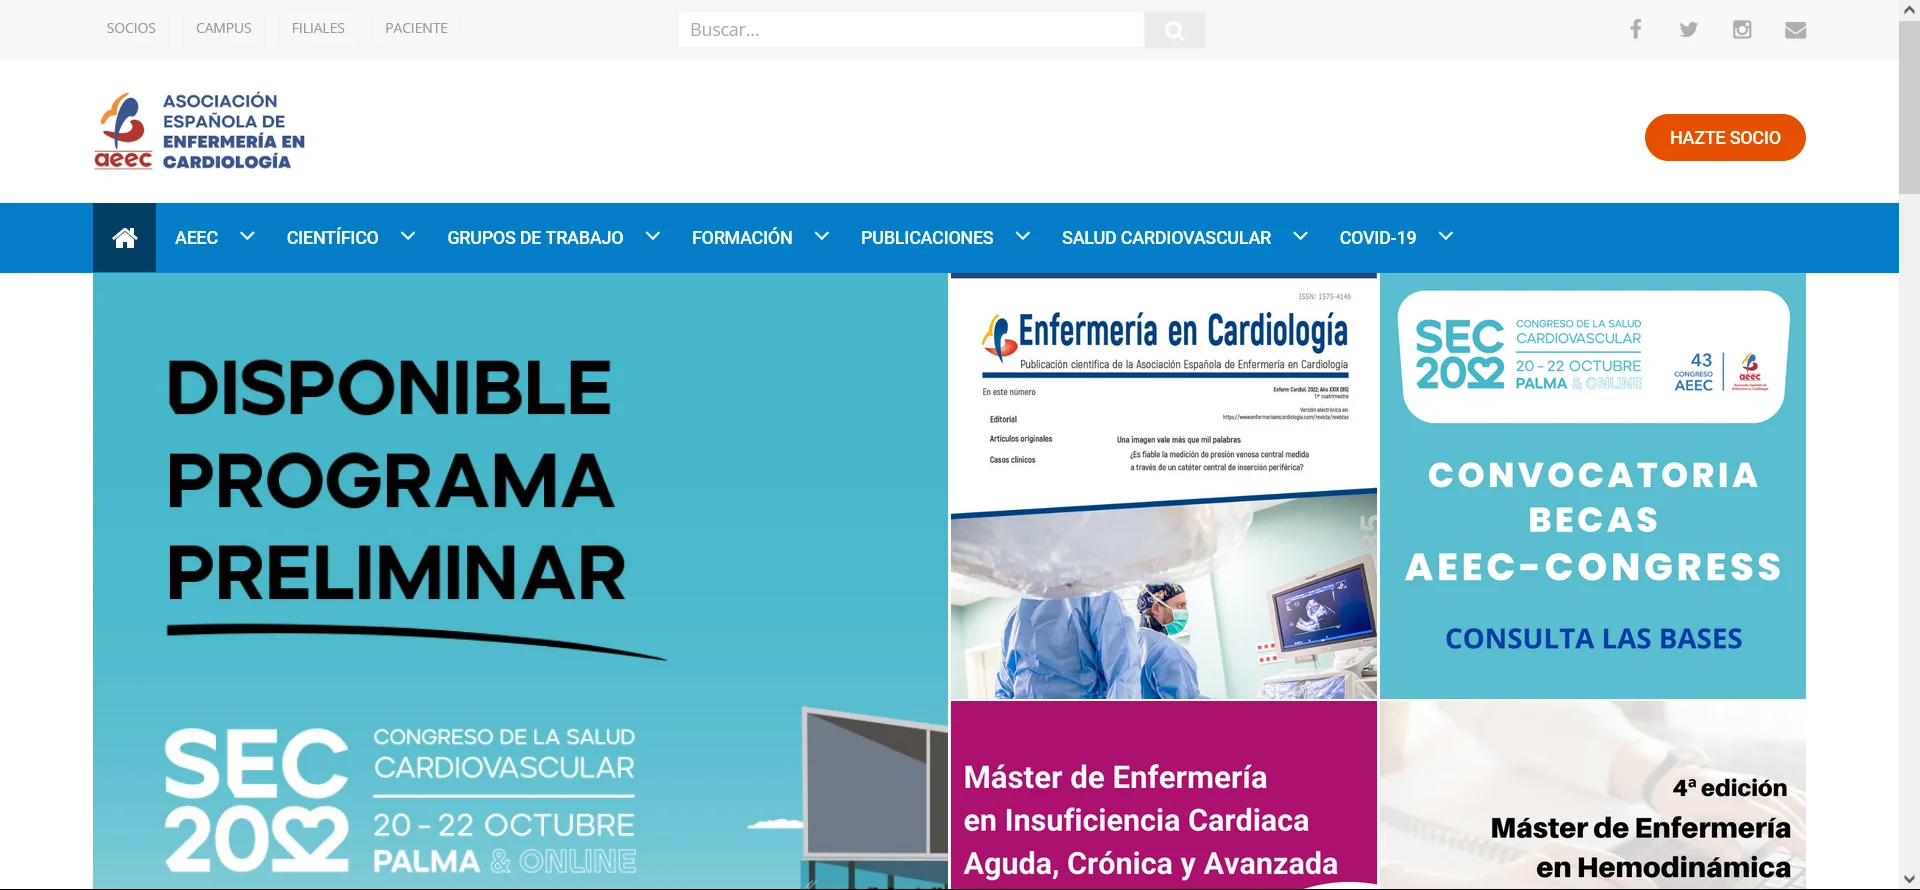 enfermeriaencardiologia.com